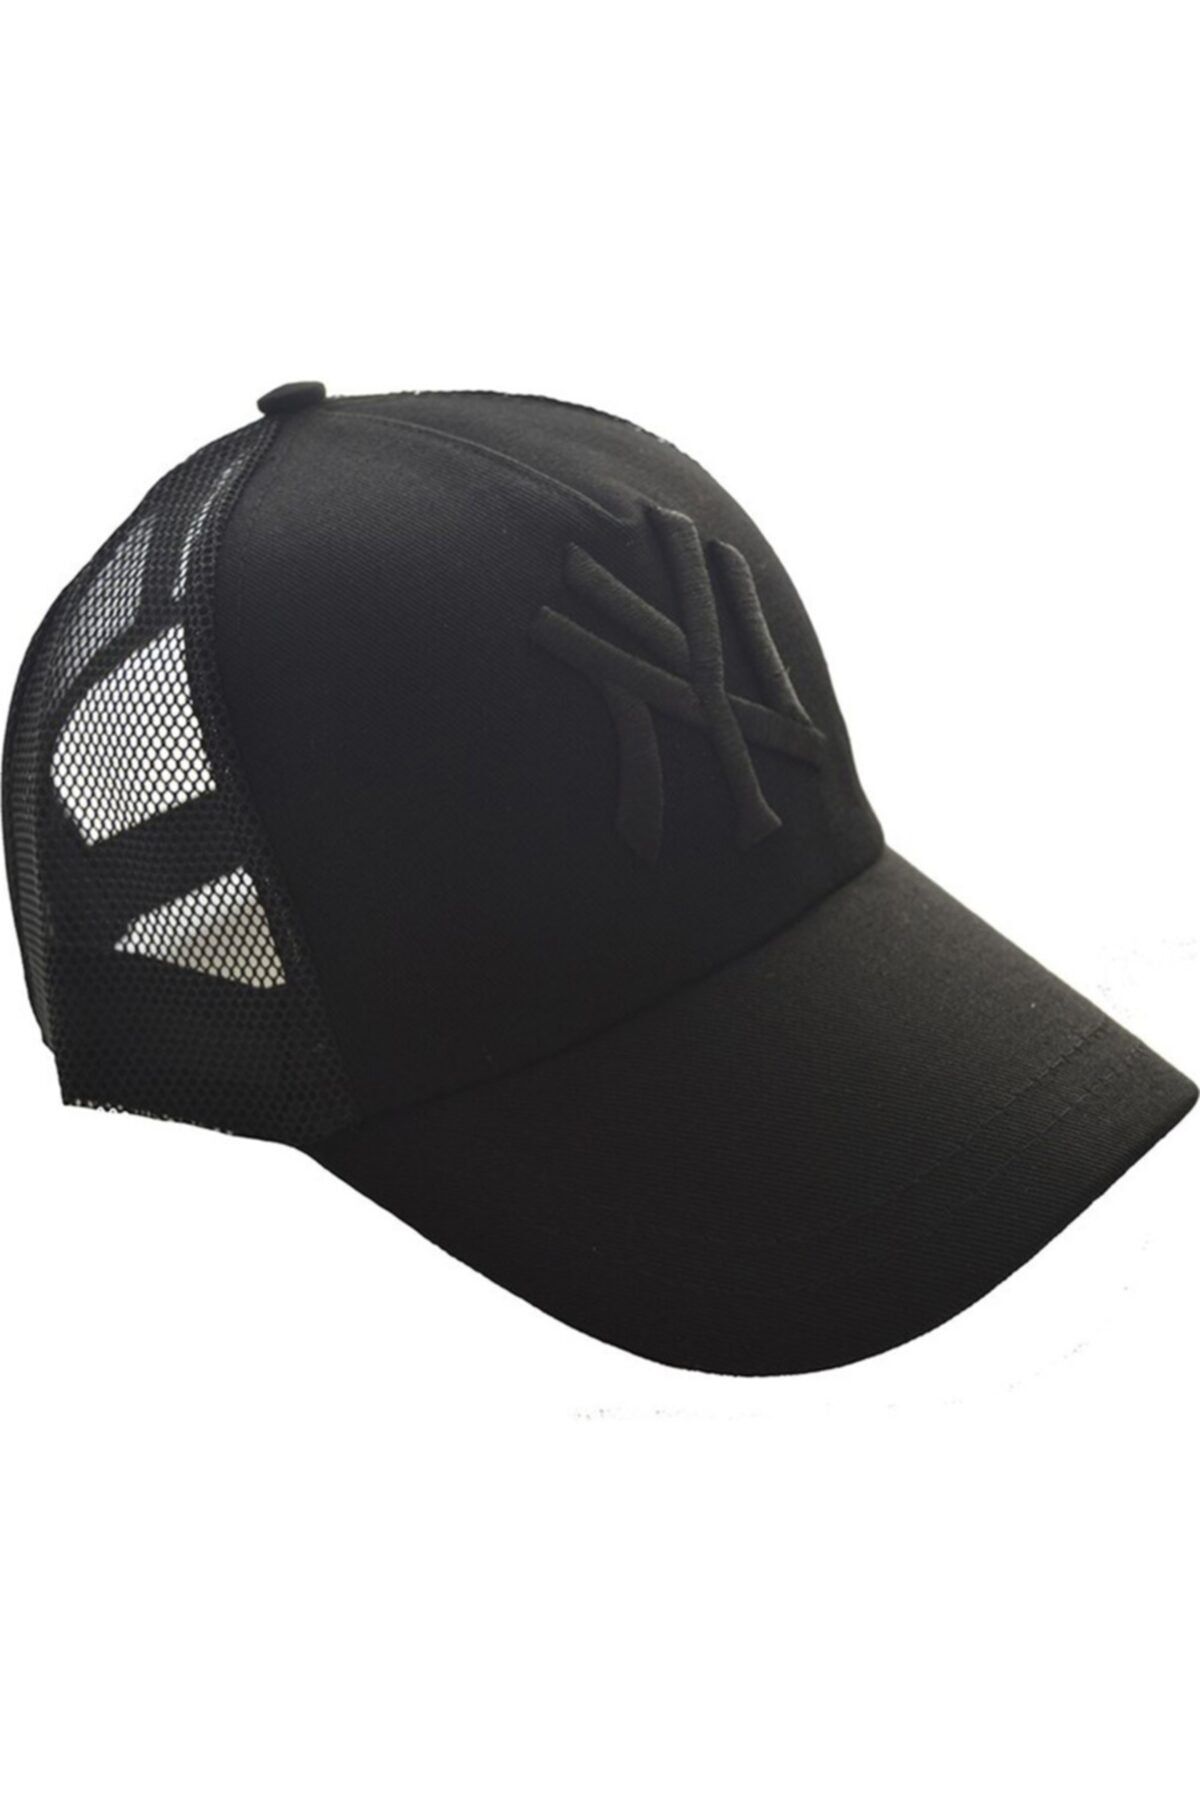 Emg Unisex Fileli Siyah Kep Şapka Siyah Logo